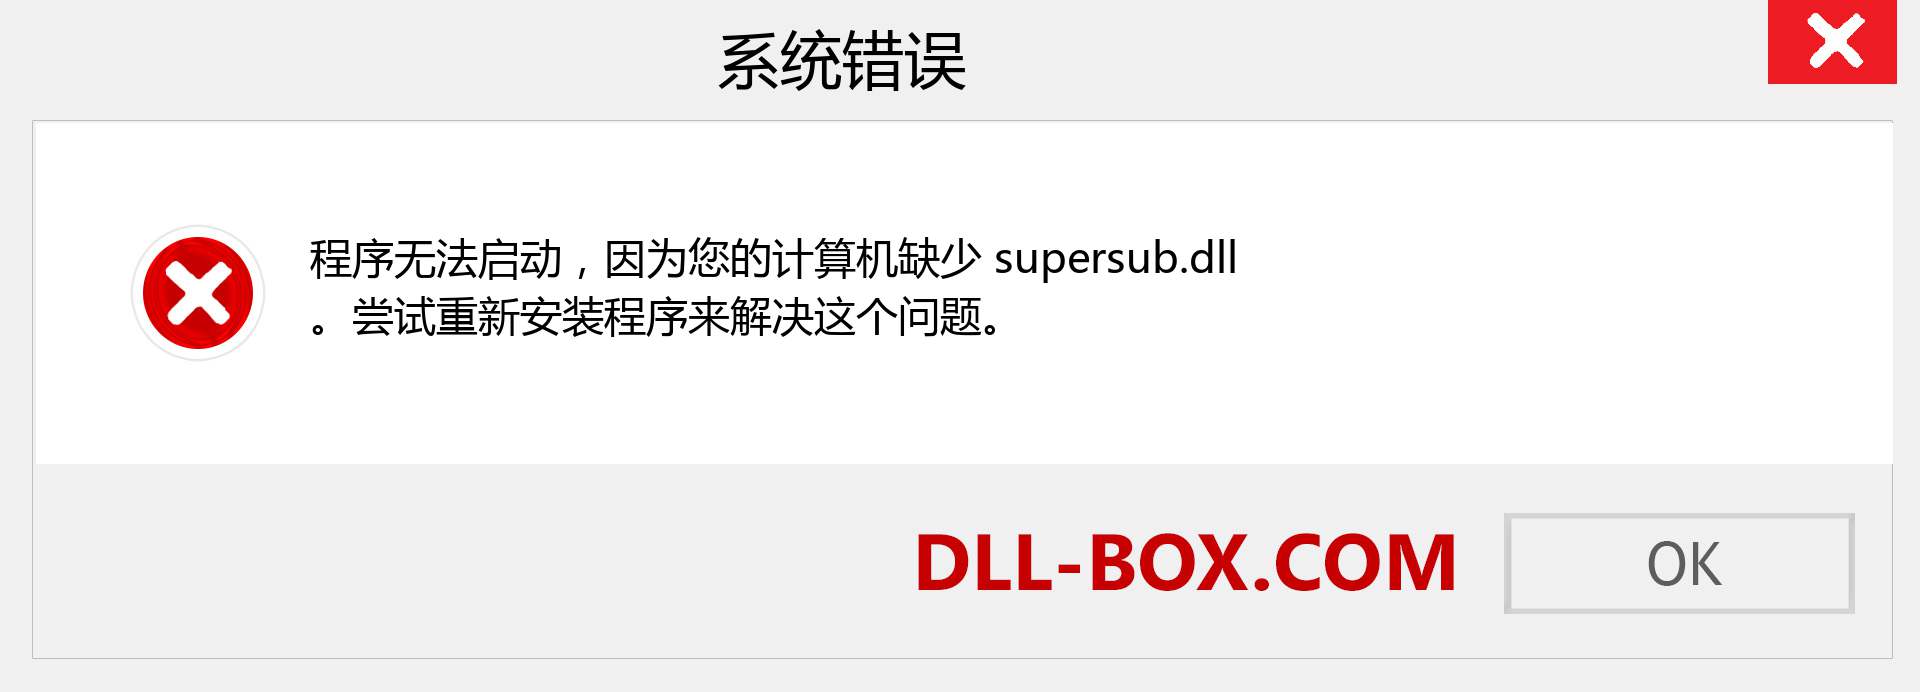 supersub.dll 文件丢失？。 适用于 Windows 7、8、10 的下载 - 修复 Windows、照片、图像上的 supersub dll 丢失错误